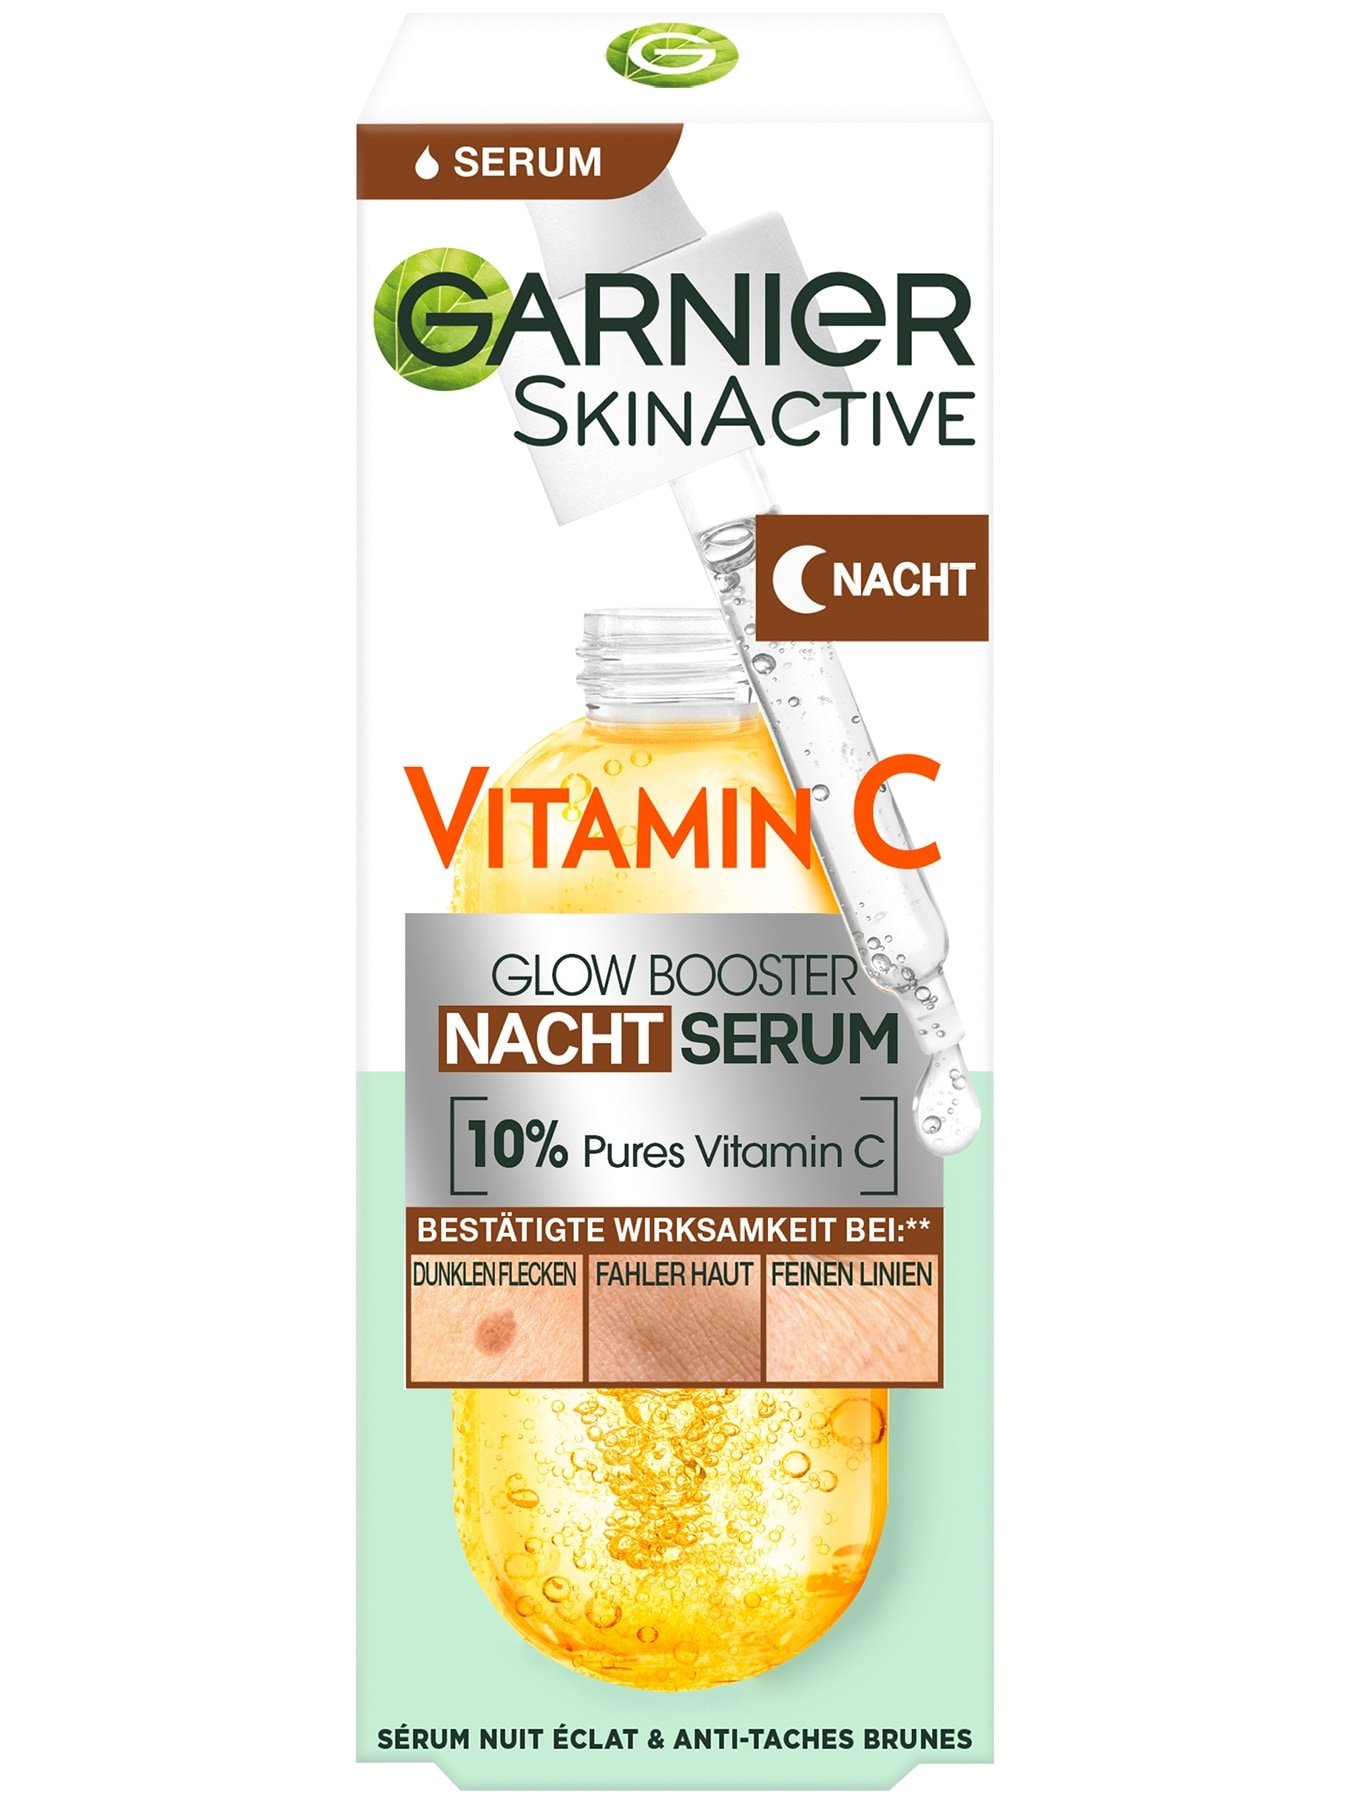 SkinActive Vitamin C Glow Booster Nachtserum - Verpackung Vorderansicht